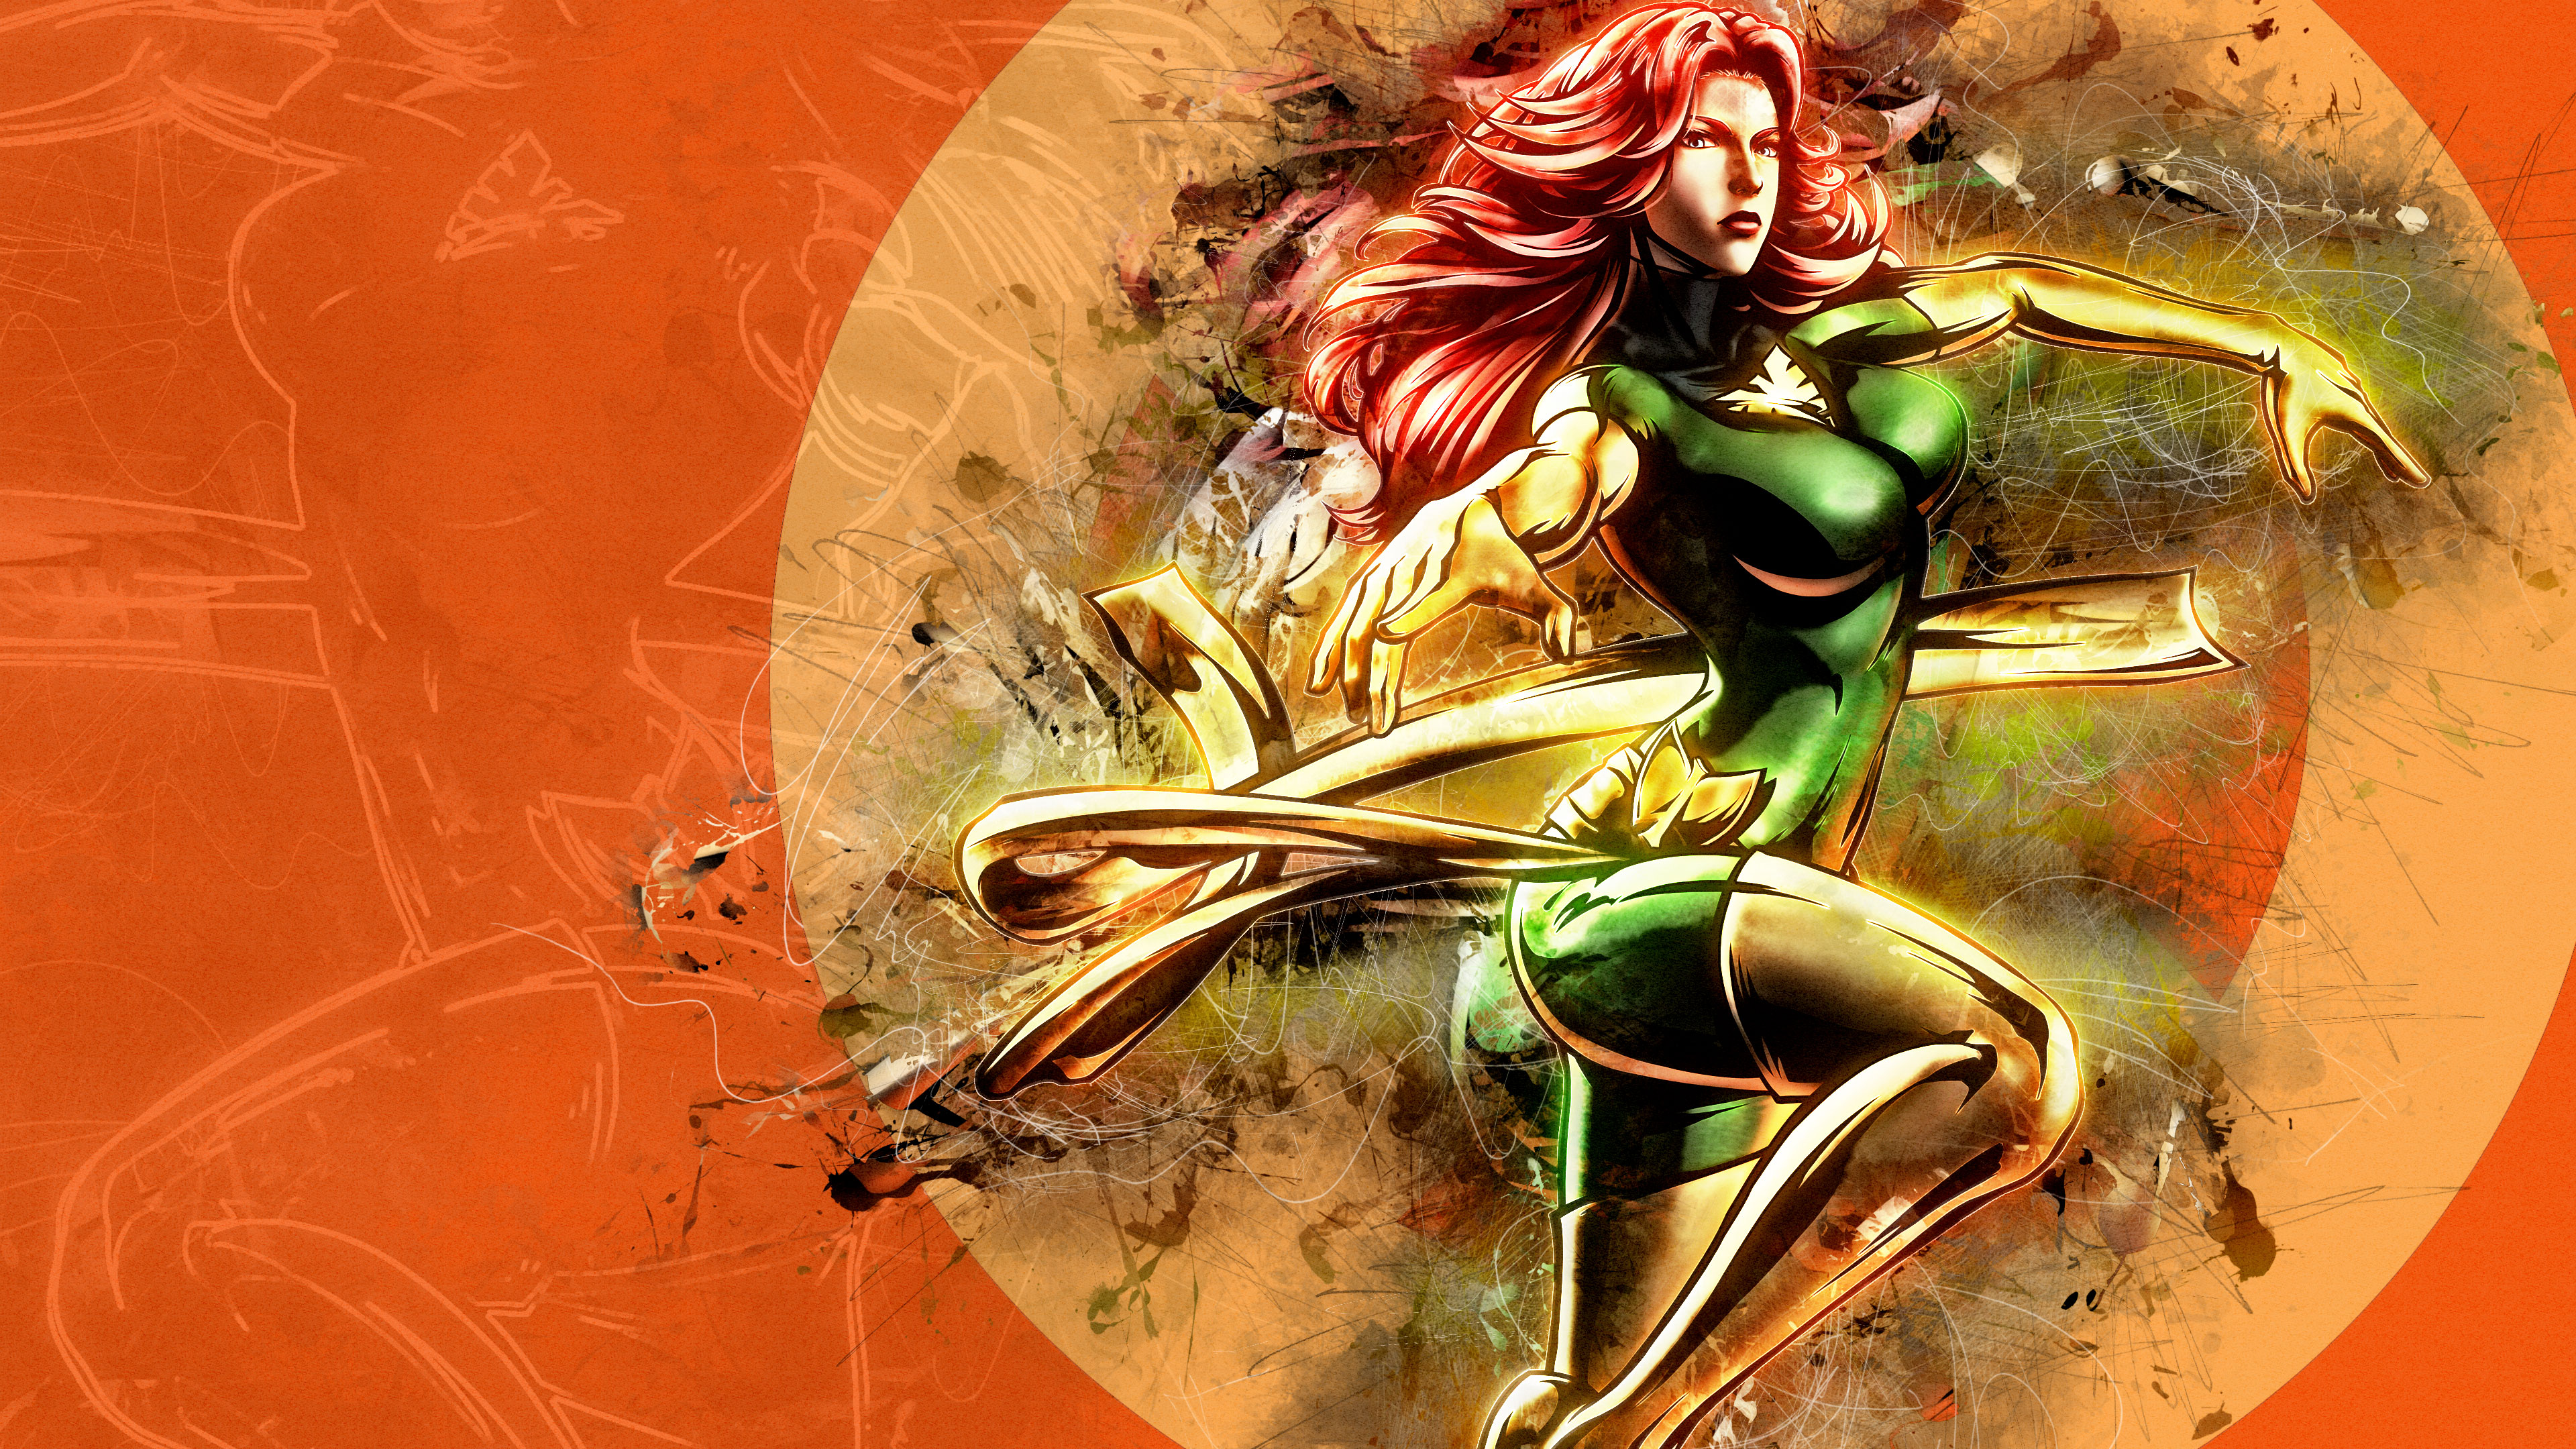 Hero Comics Artwork X Men Jean Grey Phoenix Marvel Vs Capcom 3 Fate Of Two Worlds Marvel Vs Capcom 3840x2160